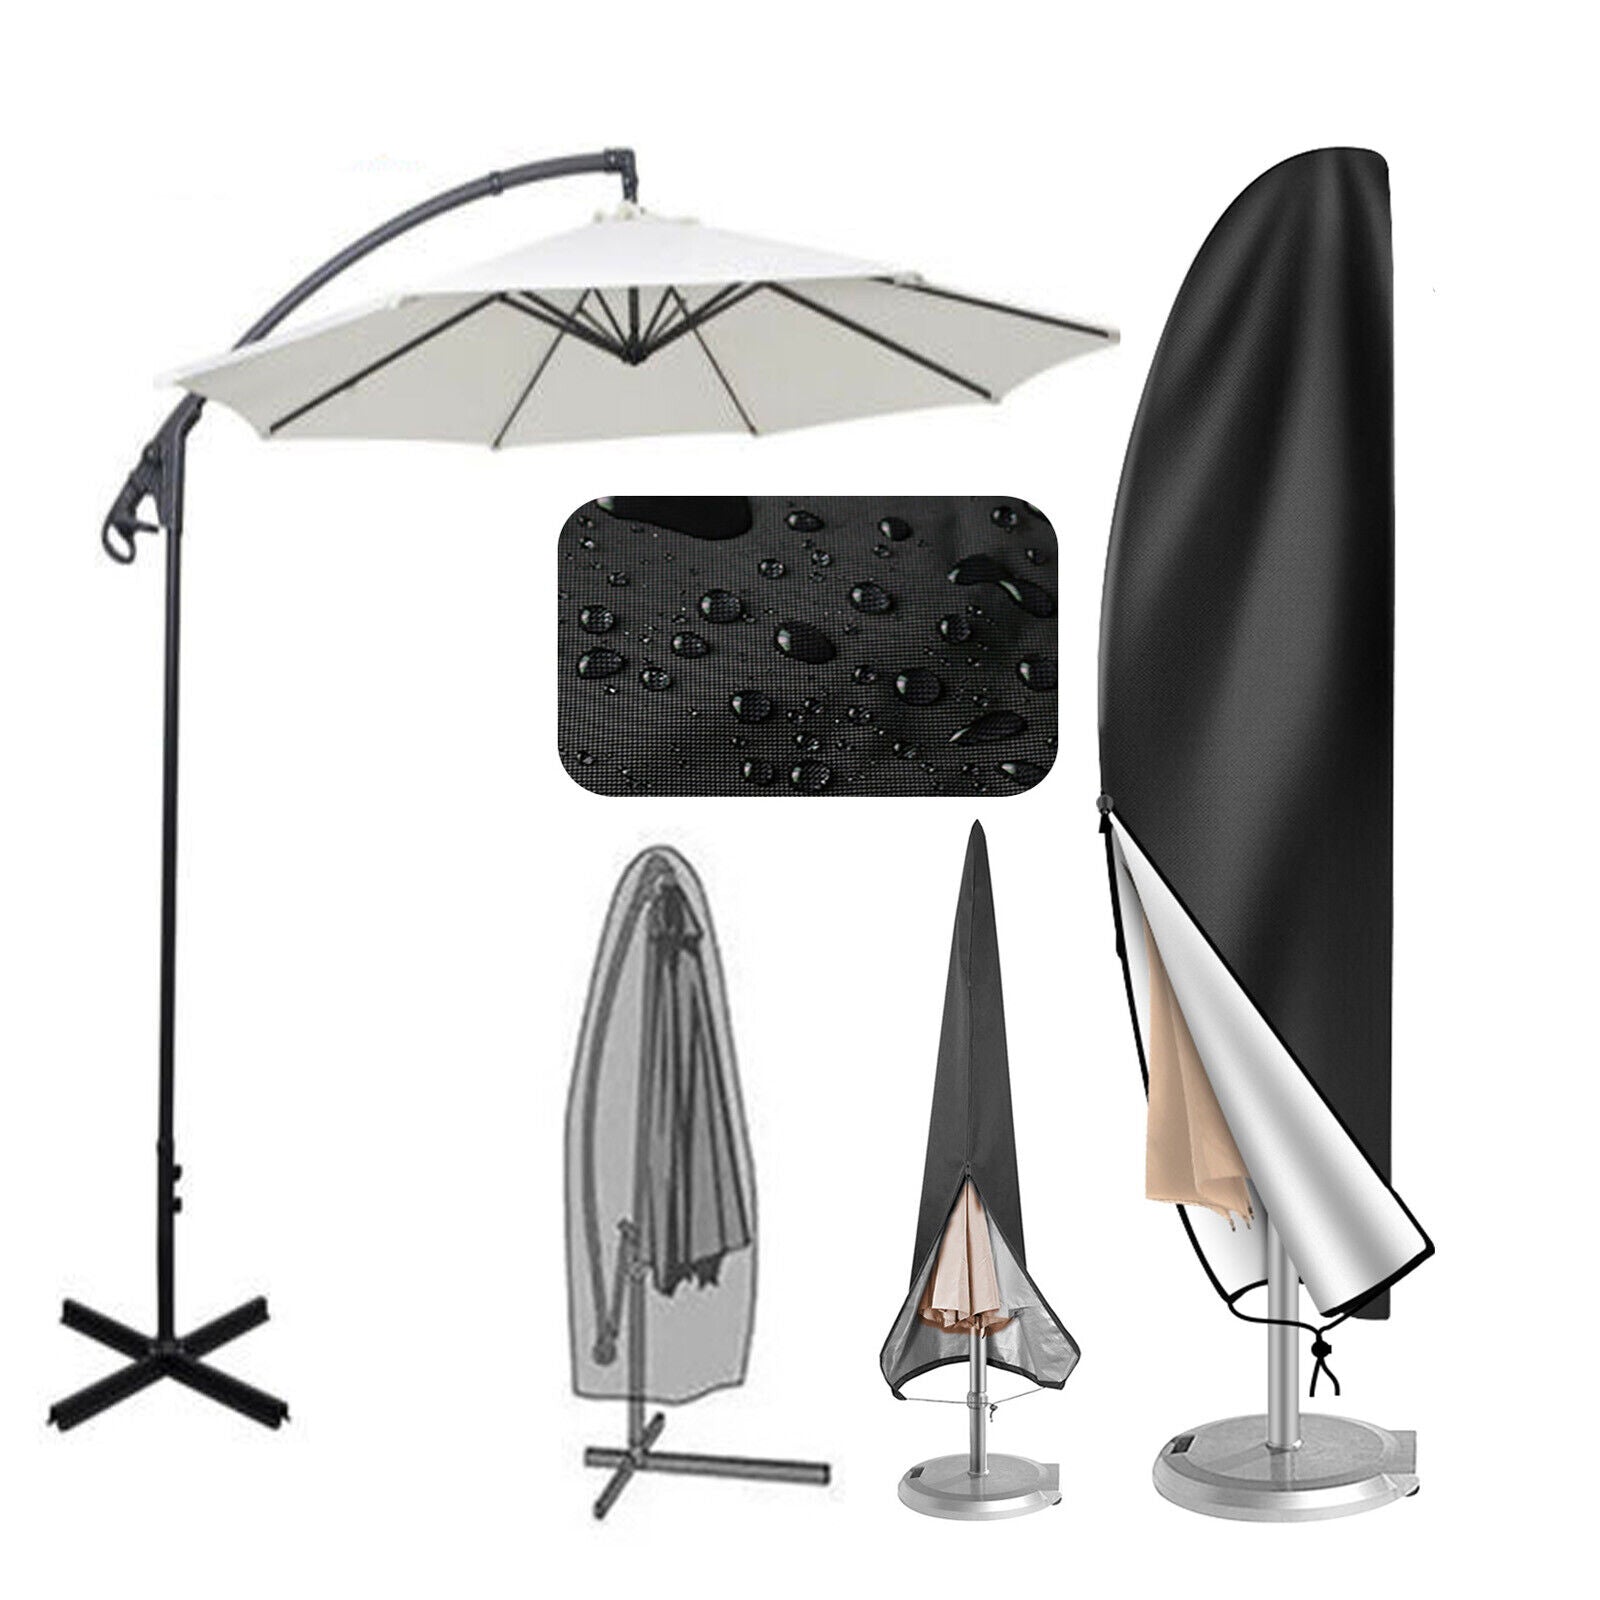 205 cm Outdoor Cantilever Umbrella Cover Garden Patio Parasol Sun/Rain/Dust Protection